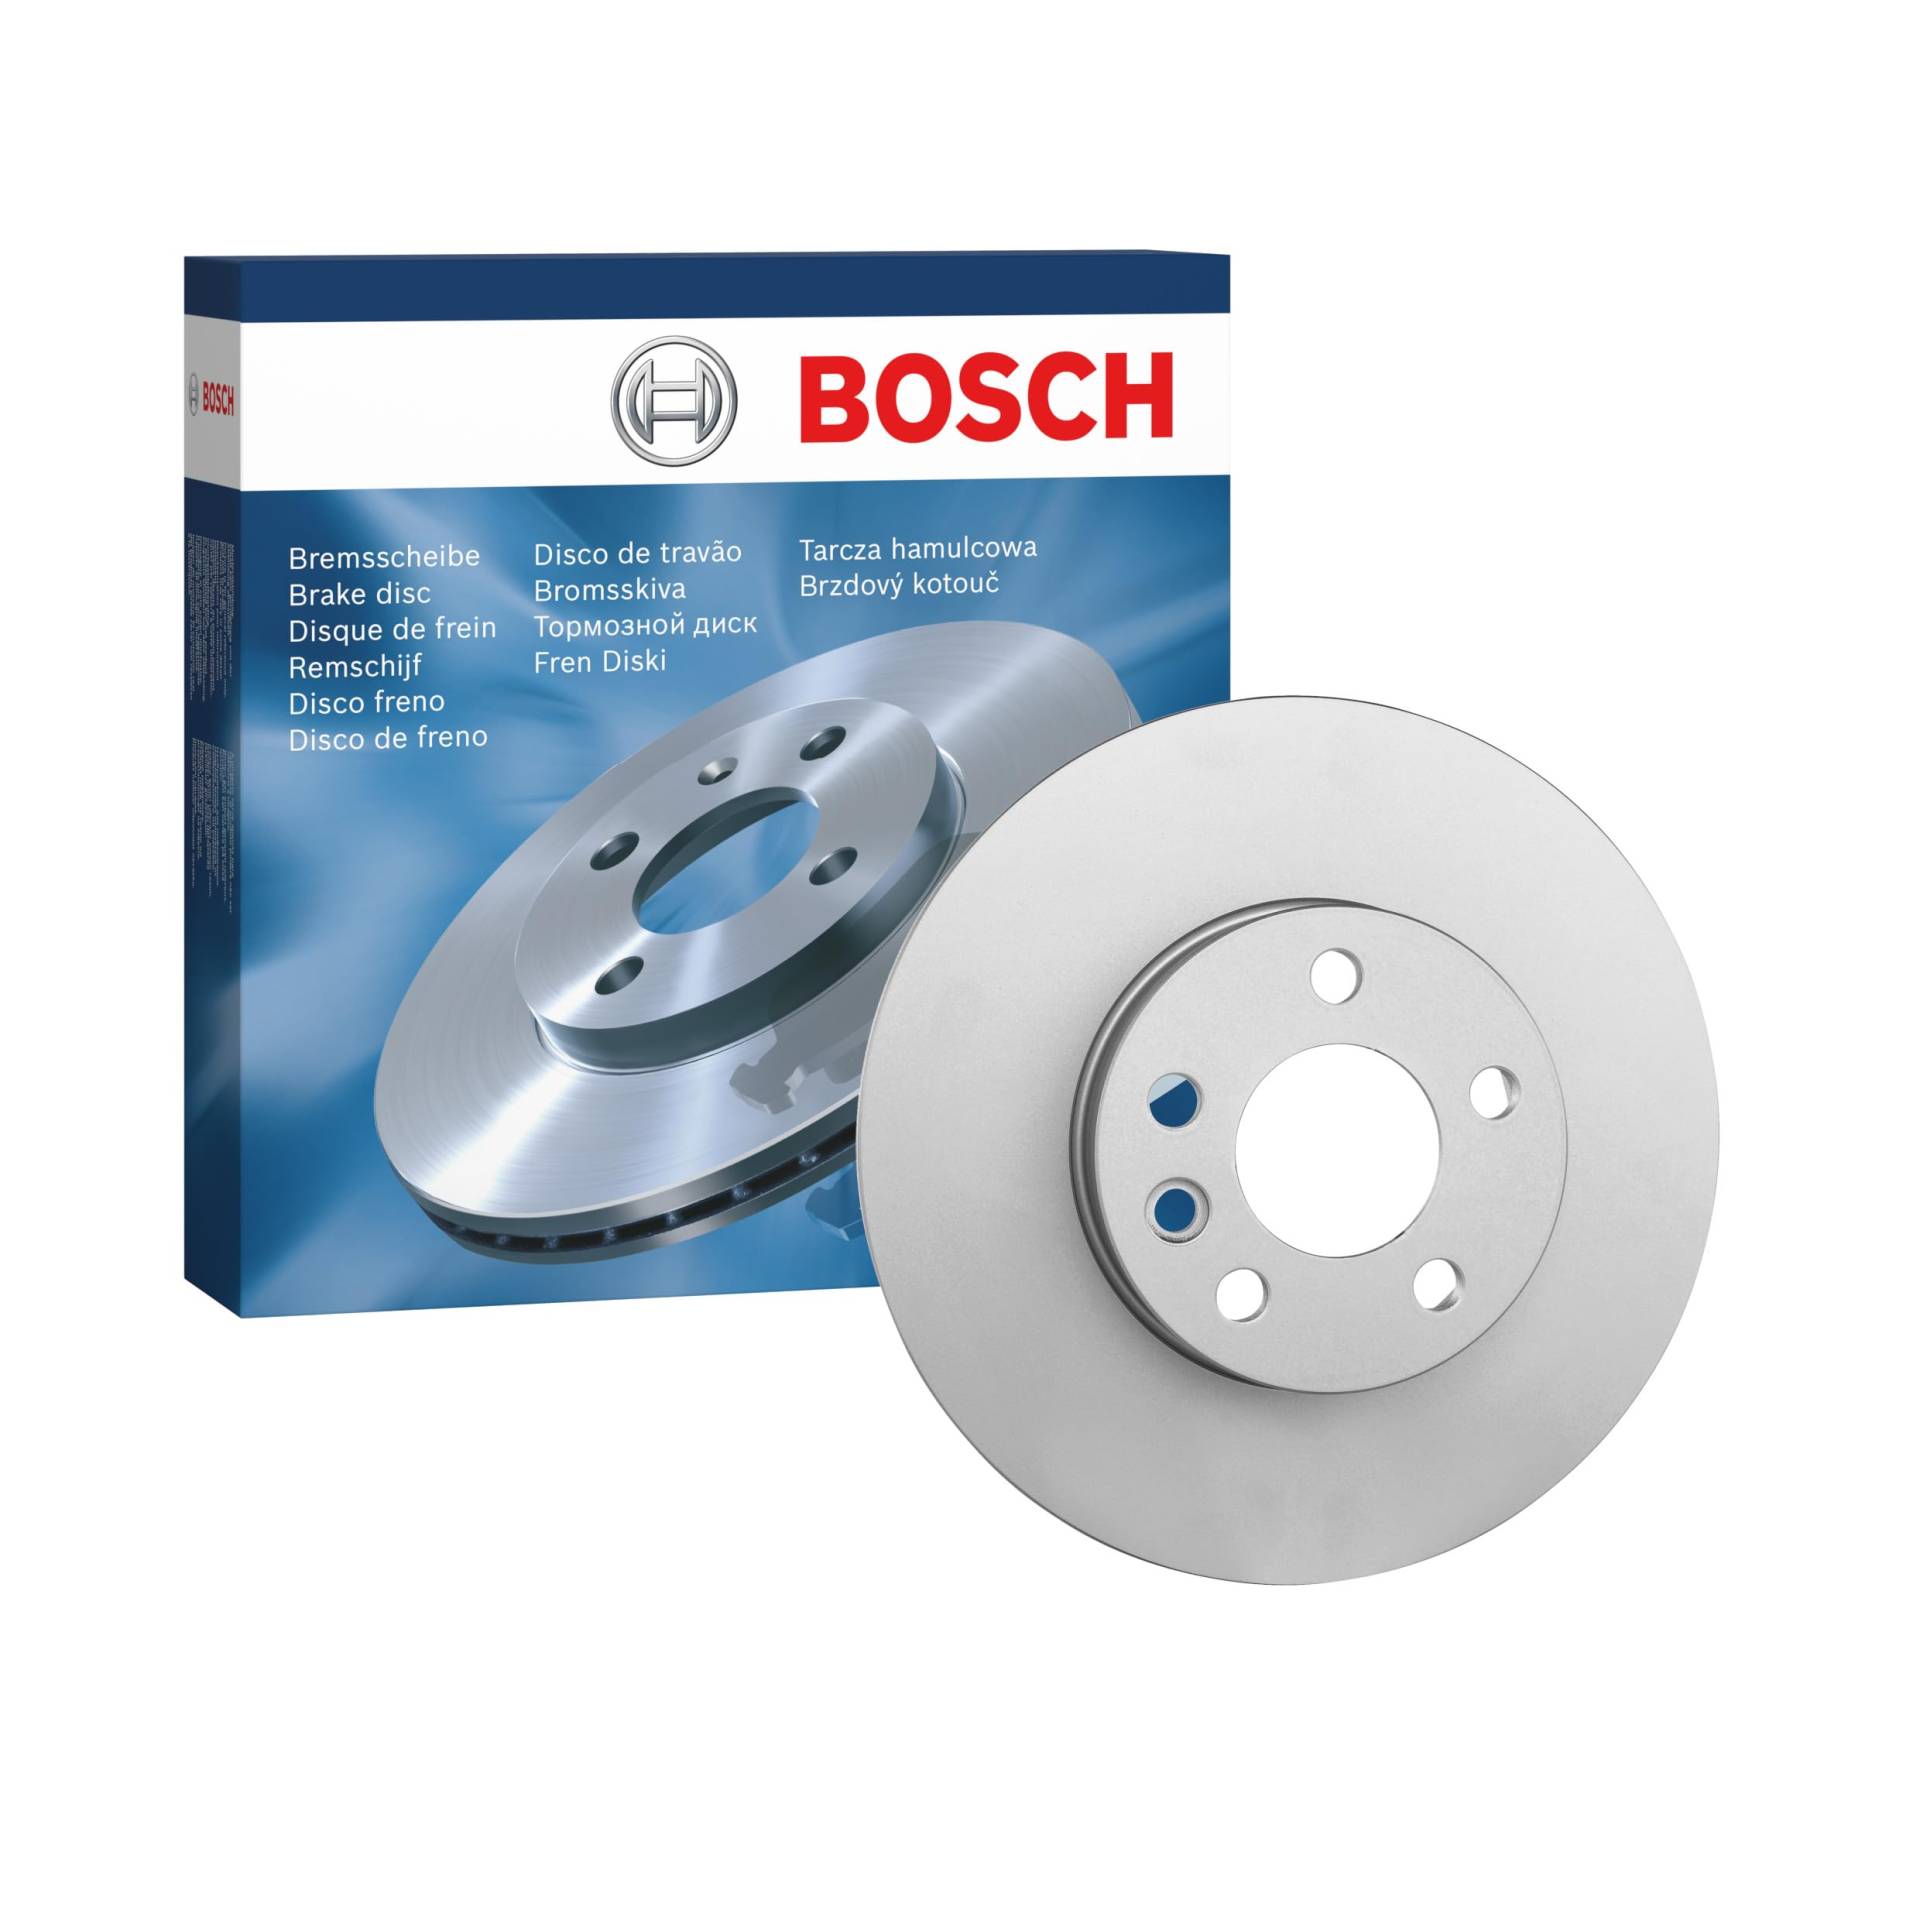 Bosch BD924 Bremsscheiben - Vorderachse - ECE-R90 Zertifizierung - eine Bremsscheibe von Bosch Automotive